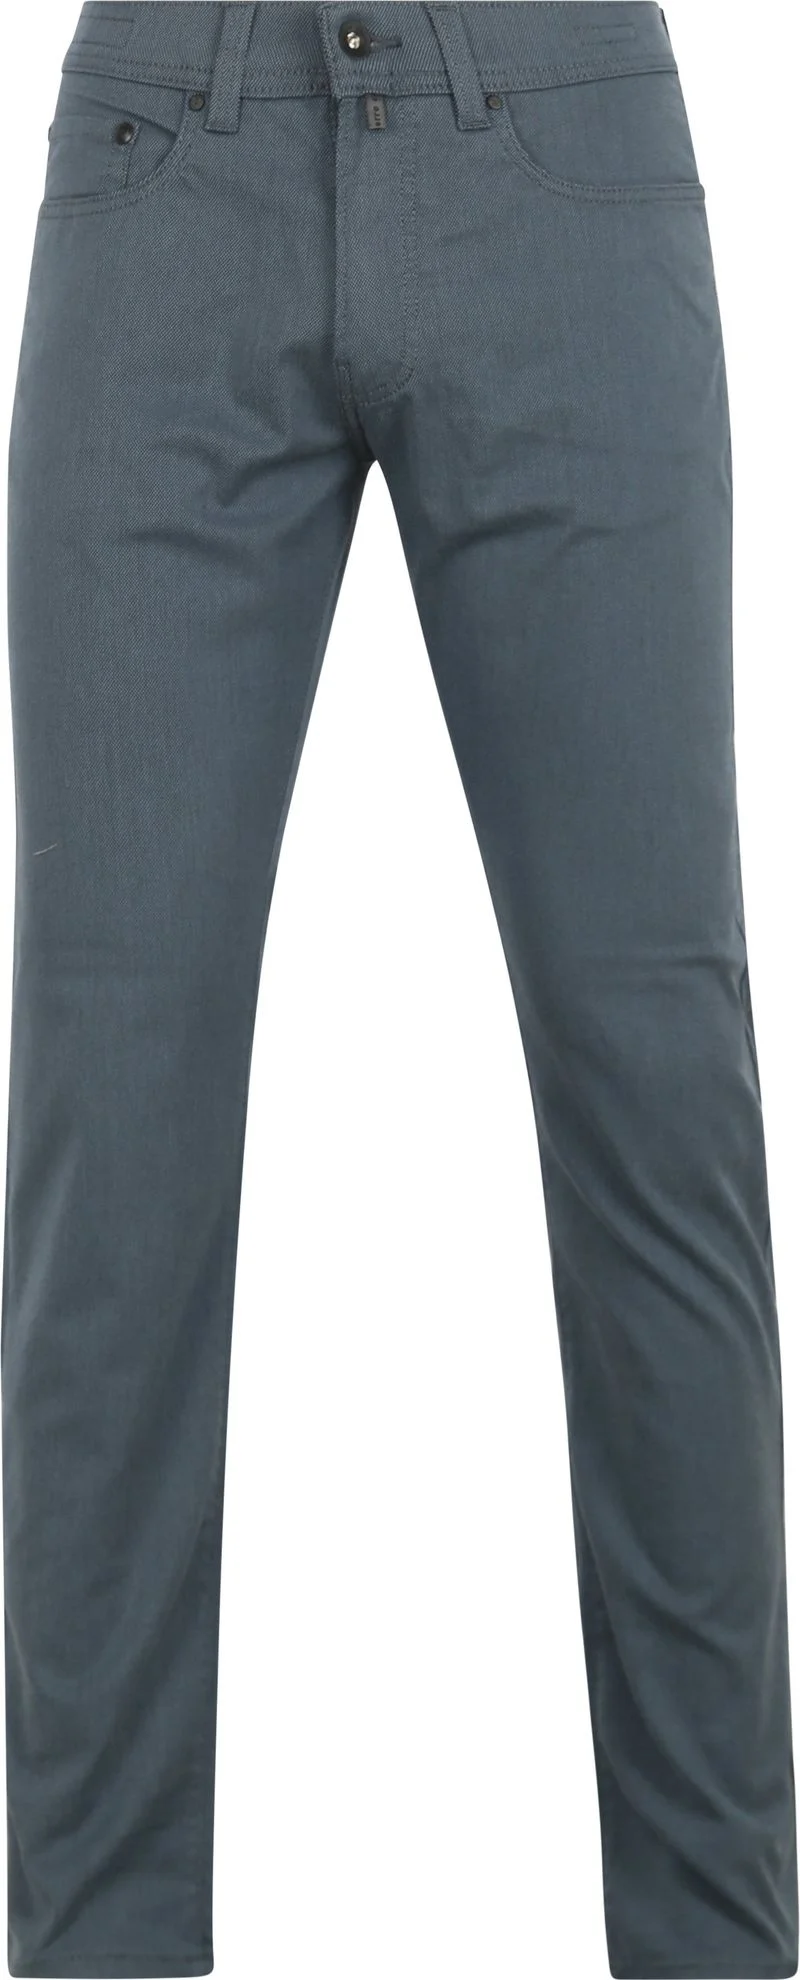 Pierre Cardin Trousers Lyon Tapered Ocean Blau - Größe W 34 - L 30 günstig online kaufen